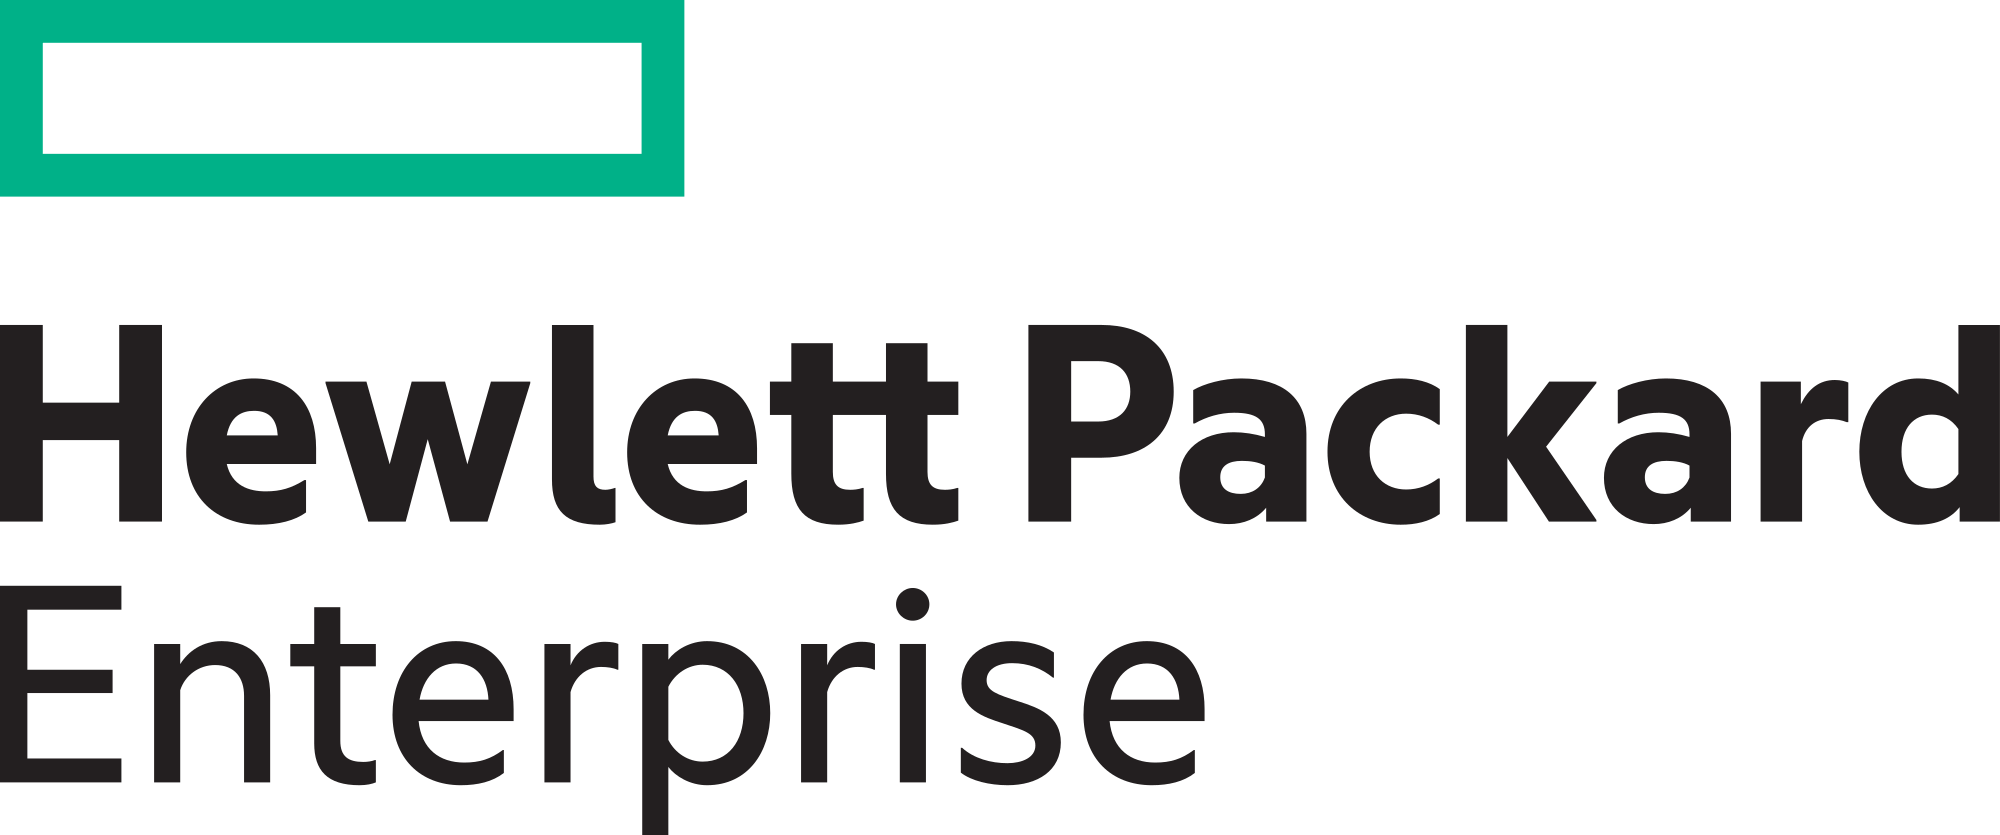 Hewlett-Packard Enterprise Logo - Hewlett Packard Enterprise logo.svg